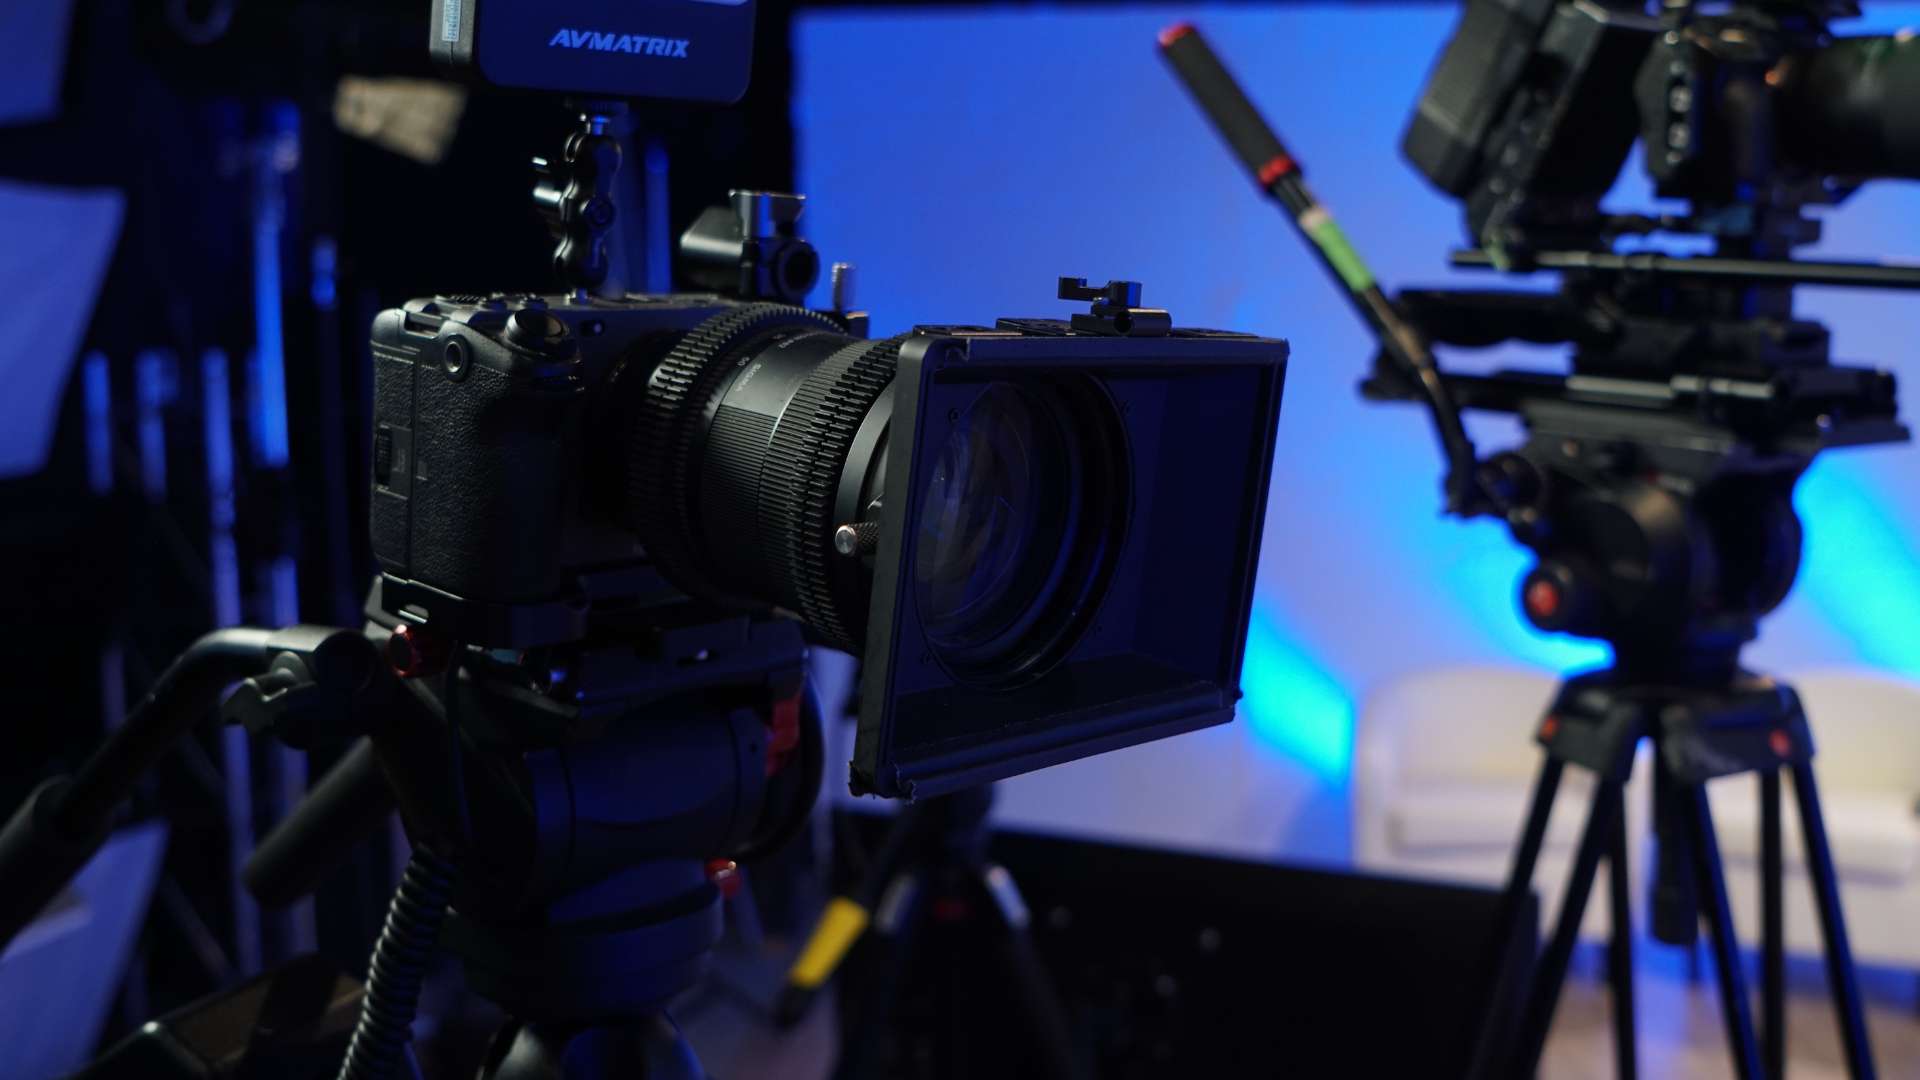 Sony FX3 used on set for altafiber shoot.